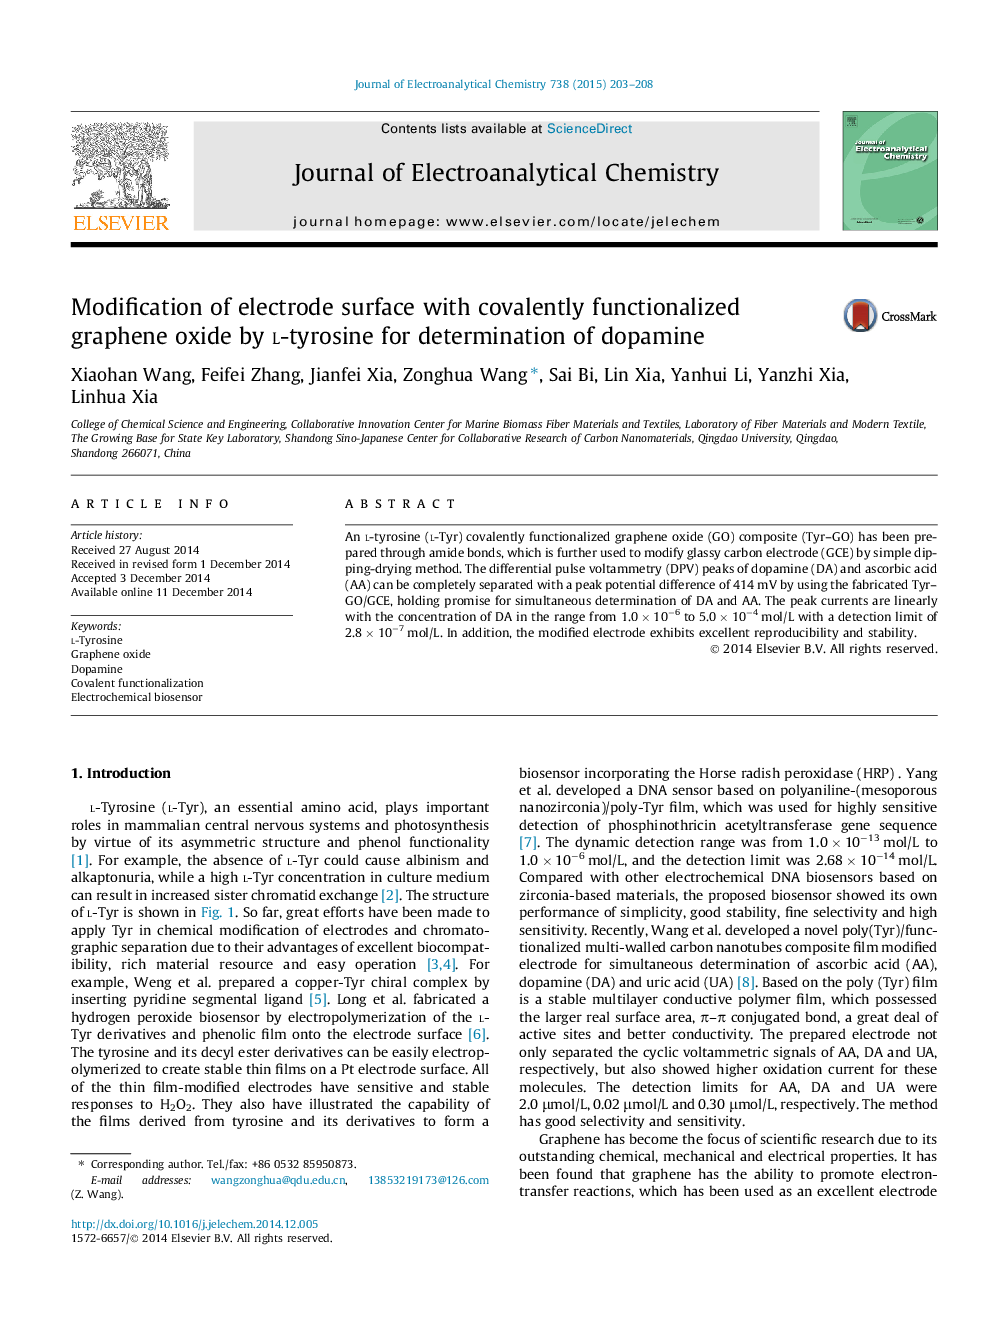 اصلاح سطح الکترود با اکسید گرافن کاراکنی شده توسط ال-تیروزین برای تعیین دوپامین 